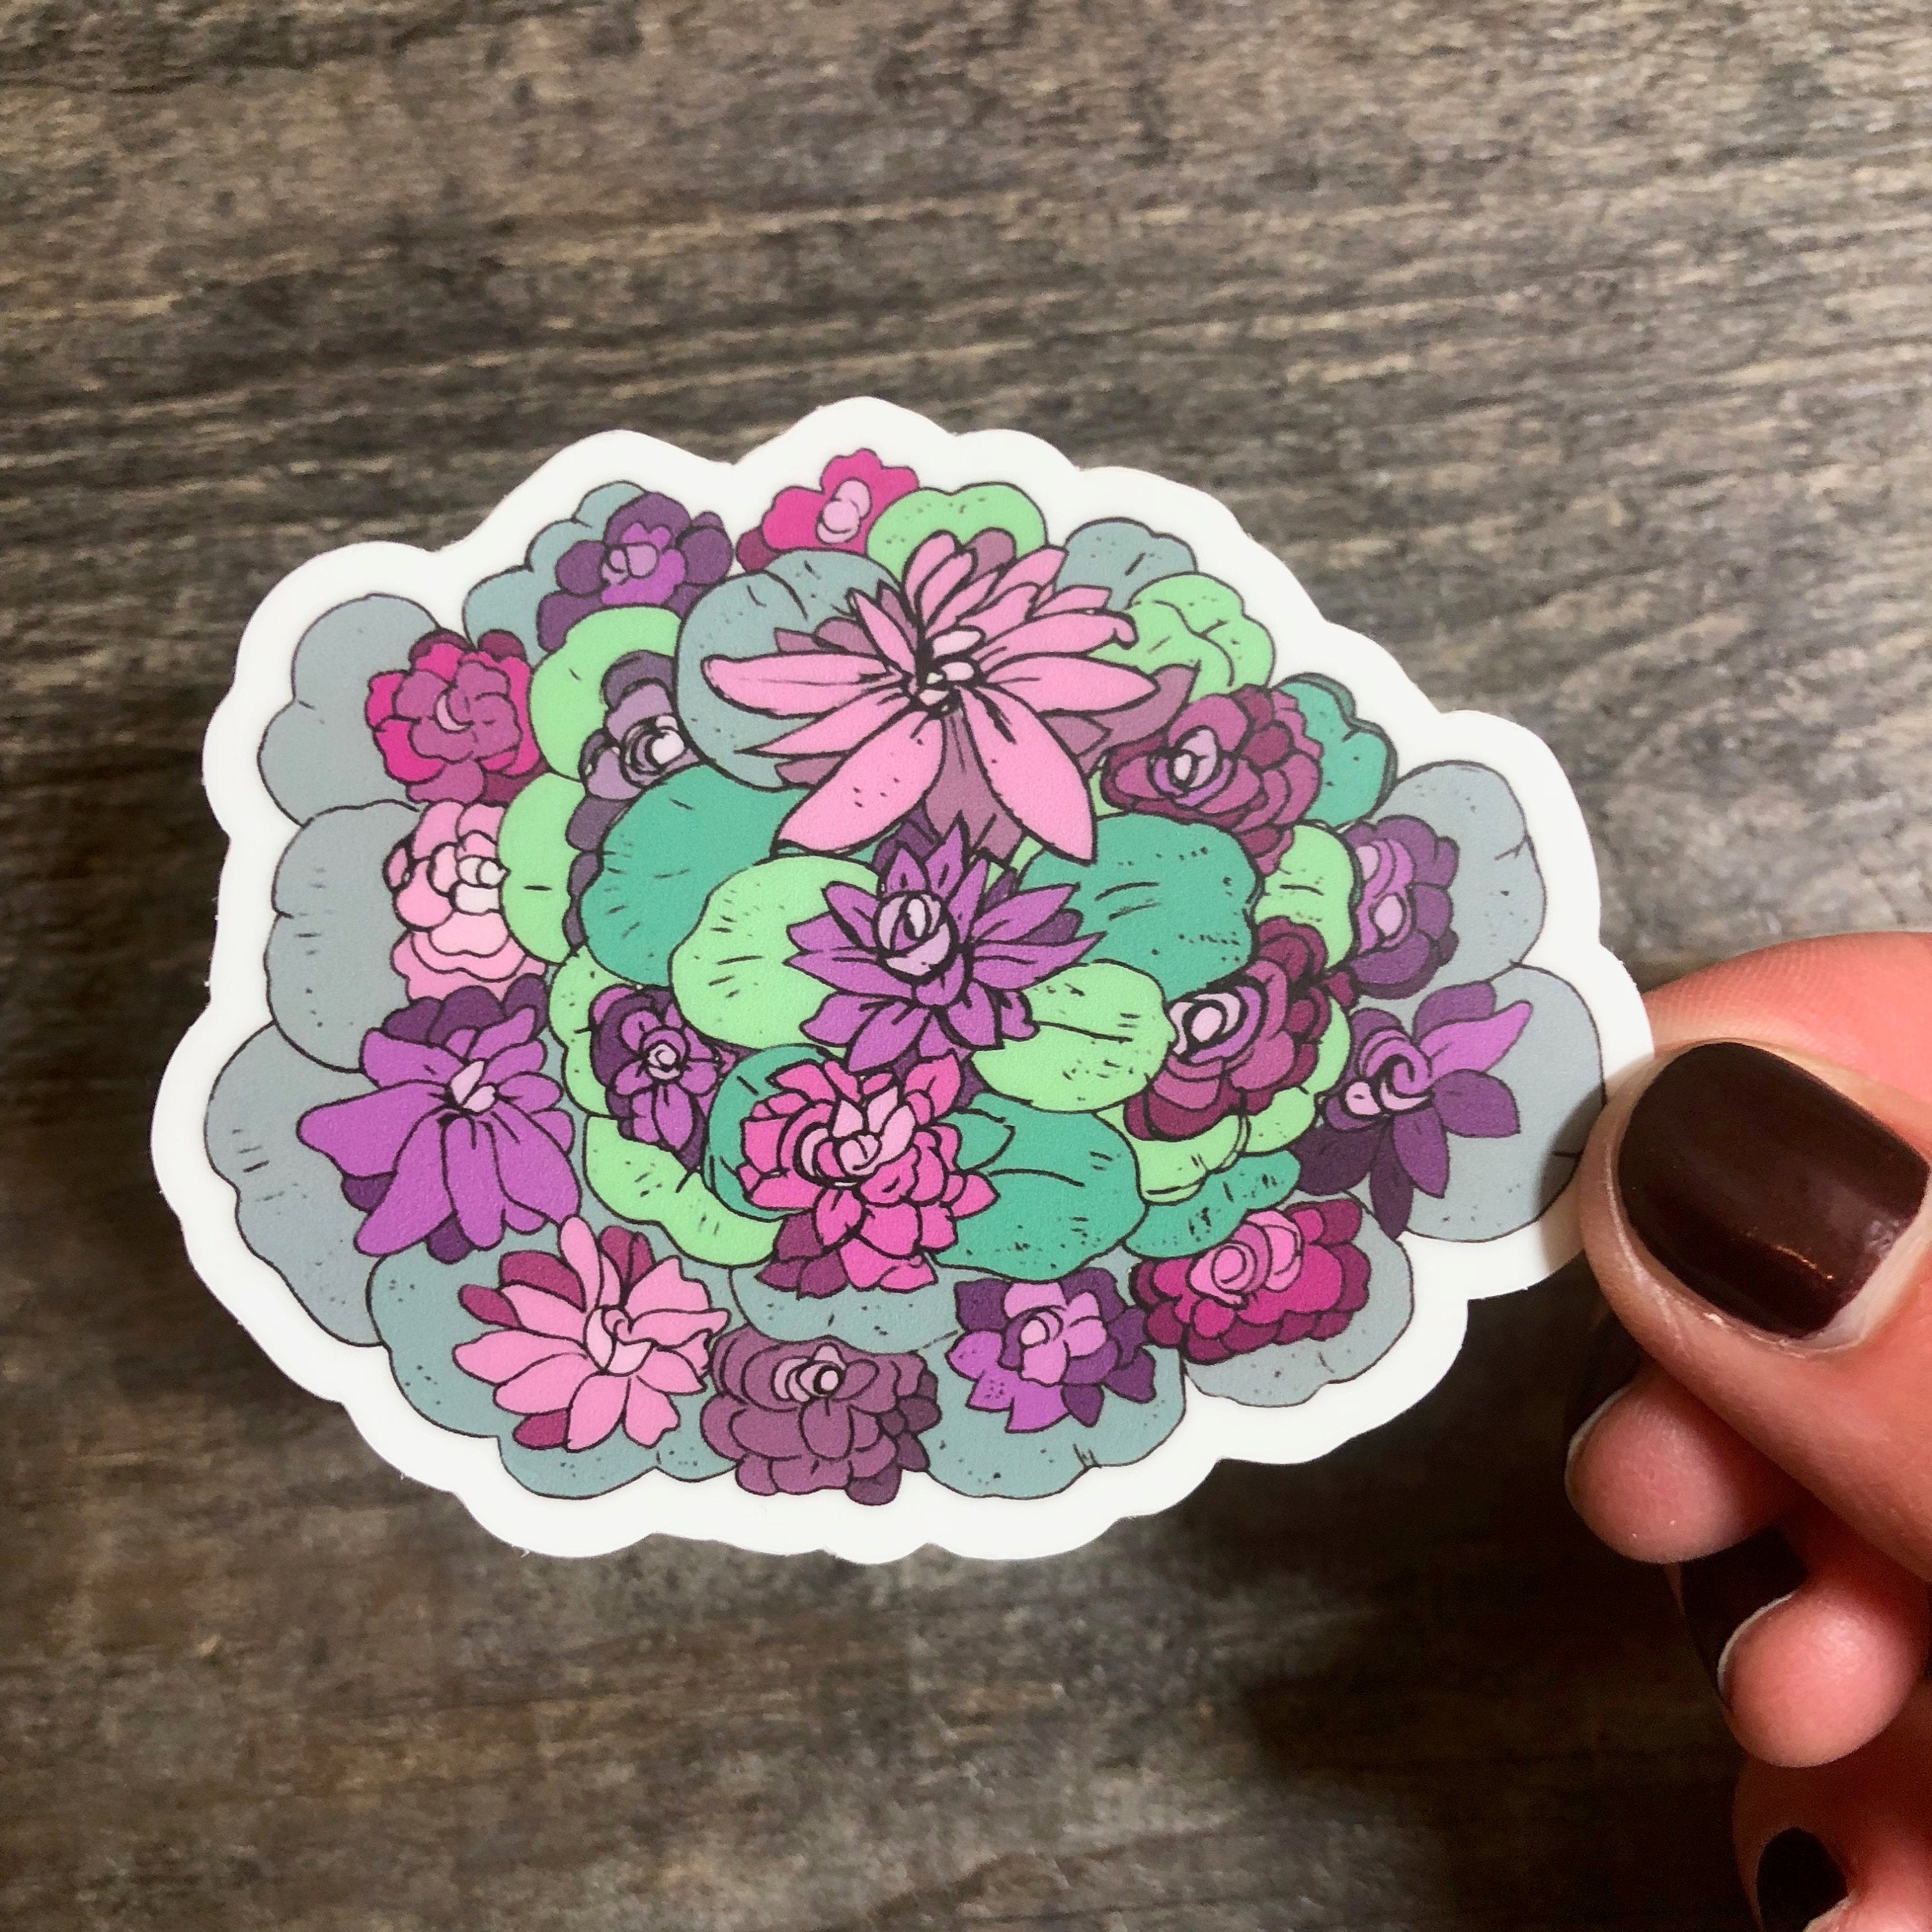 Water Lily Flowers Sticker-Vinyl Sticker-Roam Wild Designs